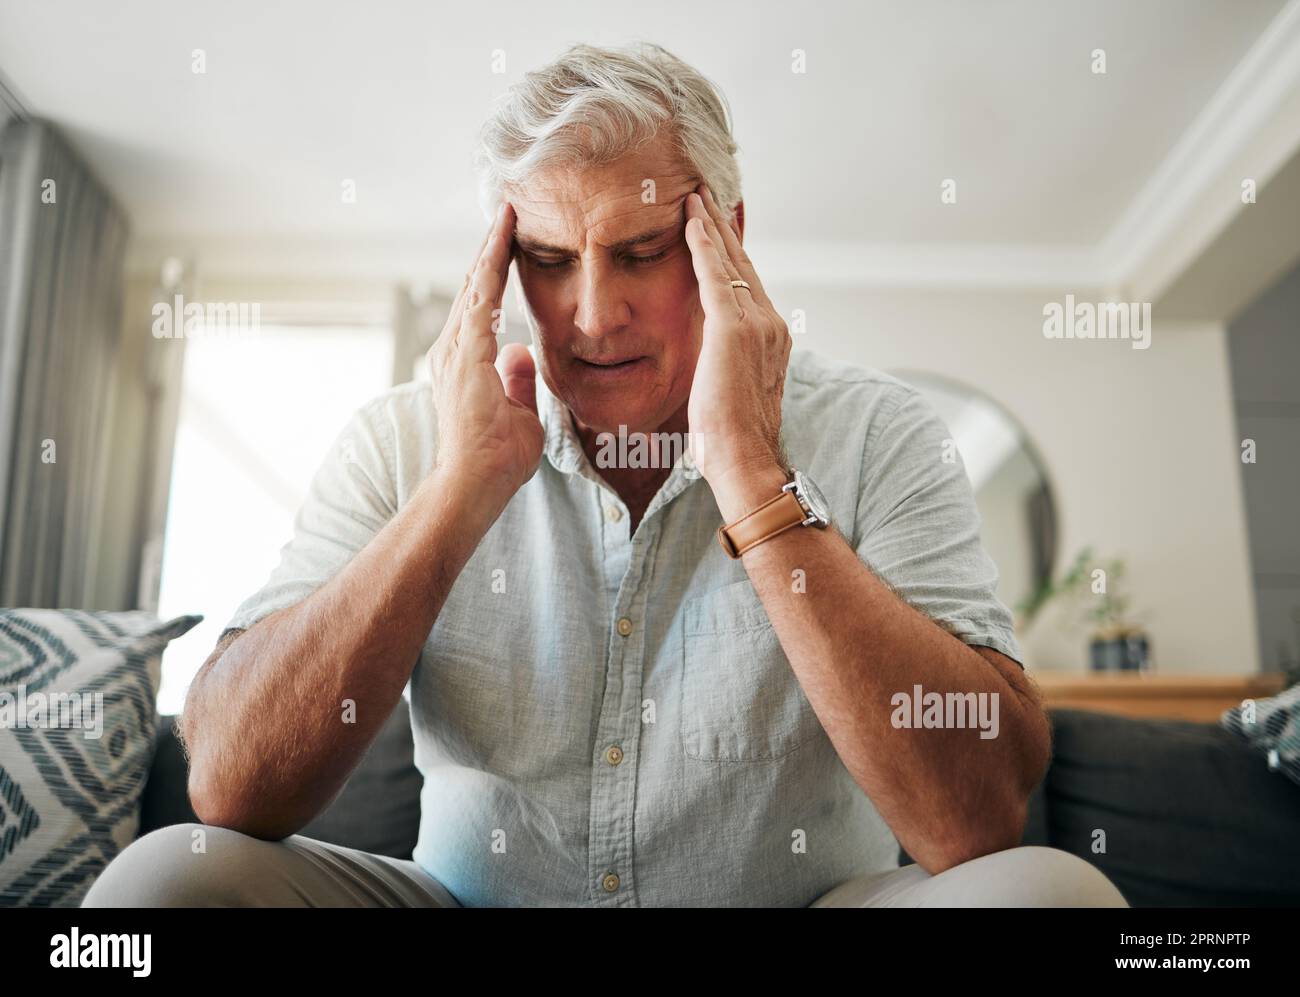 Uomo anziano con mal di testa, stress o ansia per la pensione, problemi finanziari o ipoteca casa nel suo salotto. Uomo anziano malato con emicrania p Foto Stock